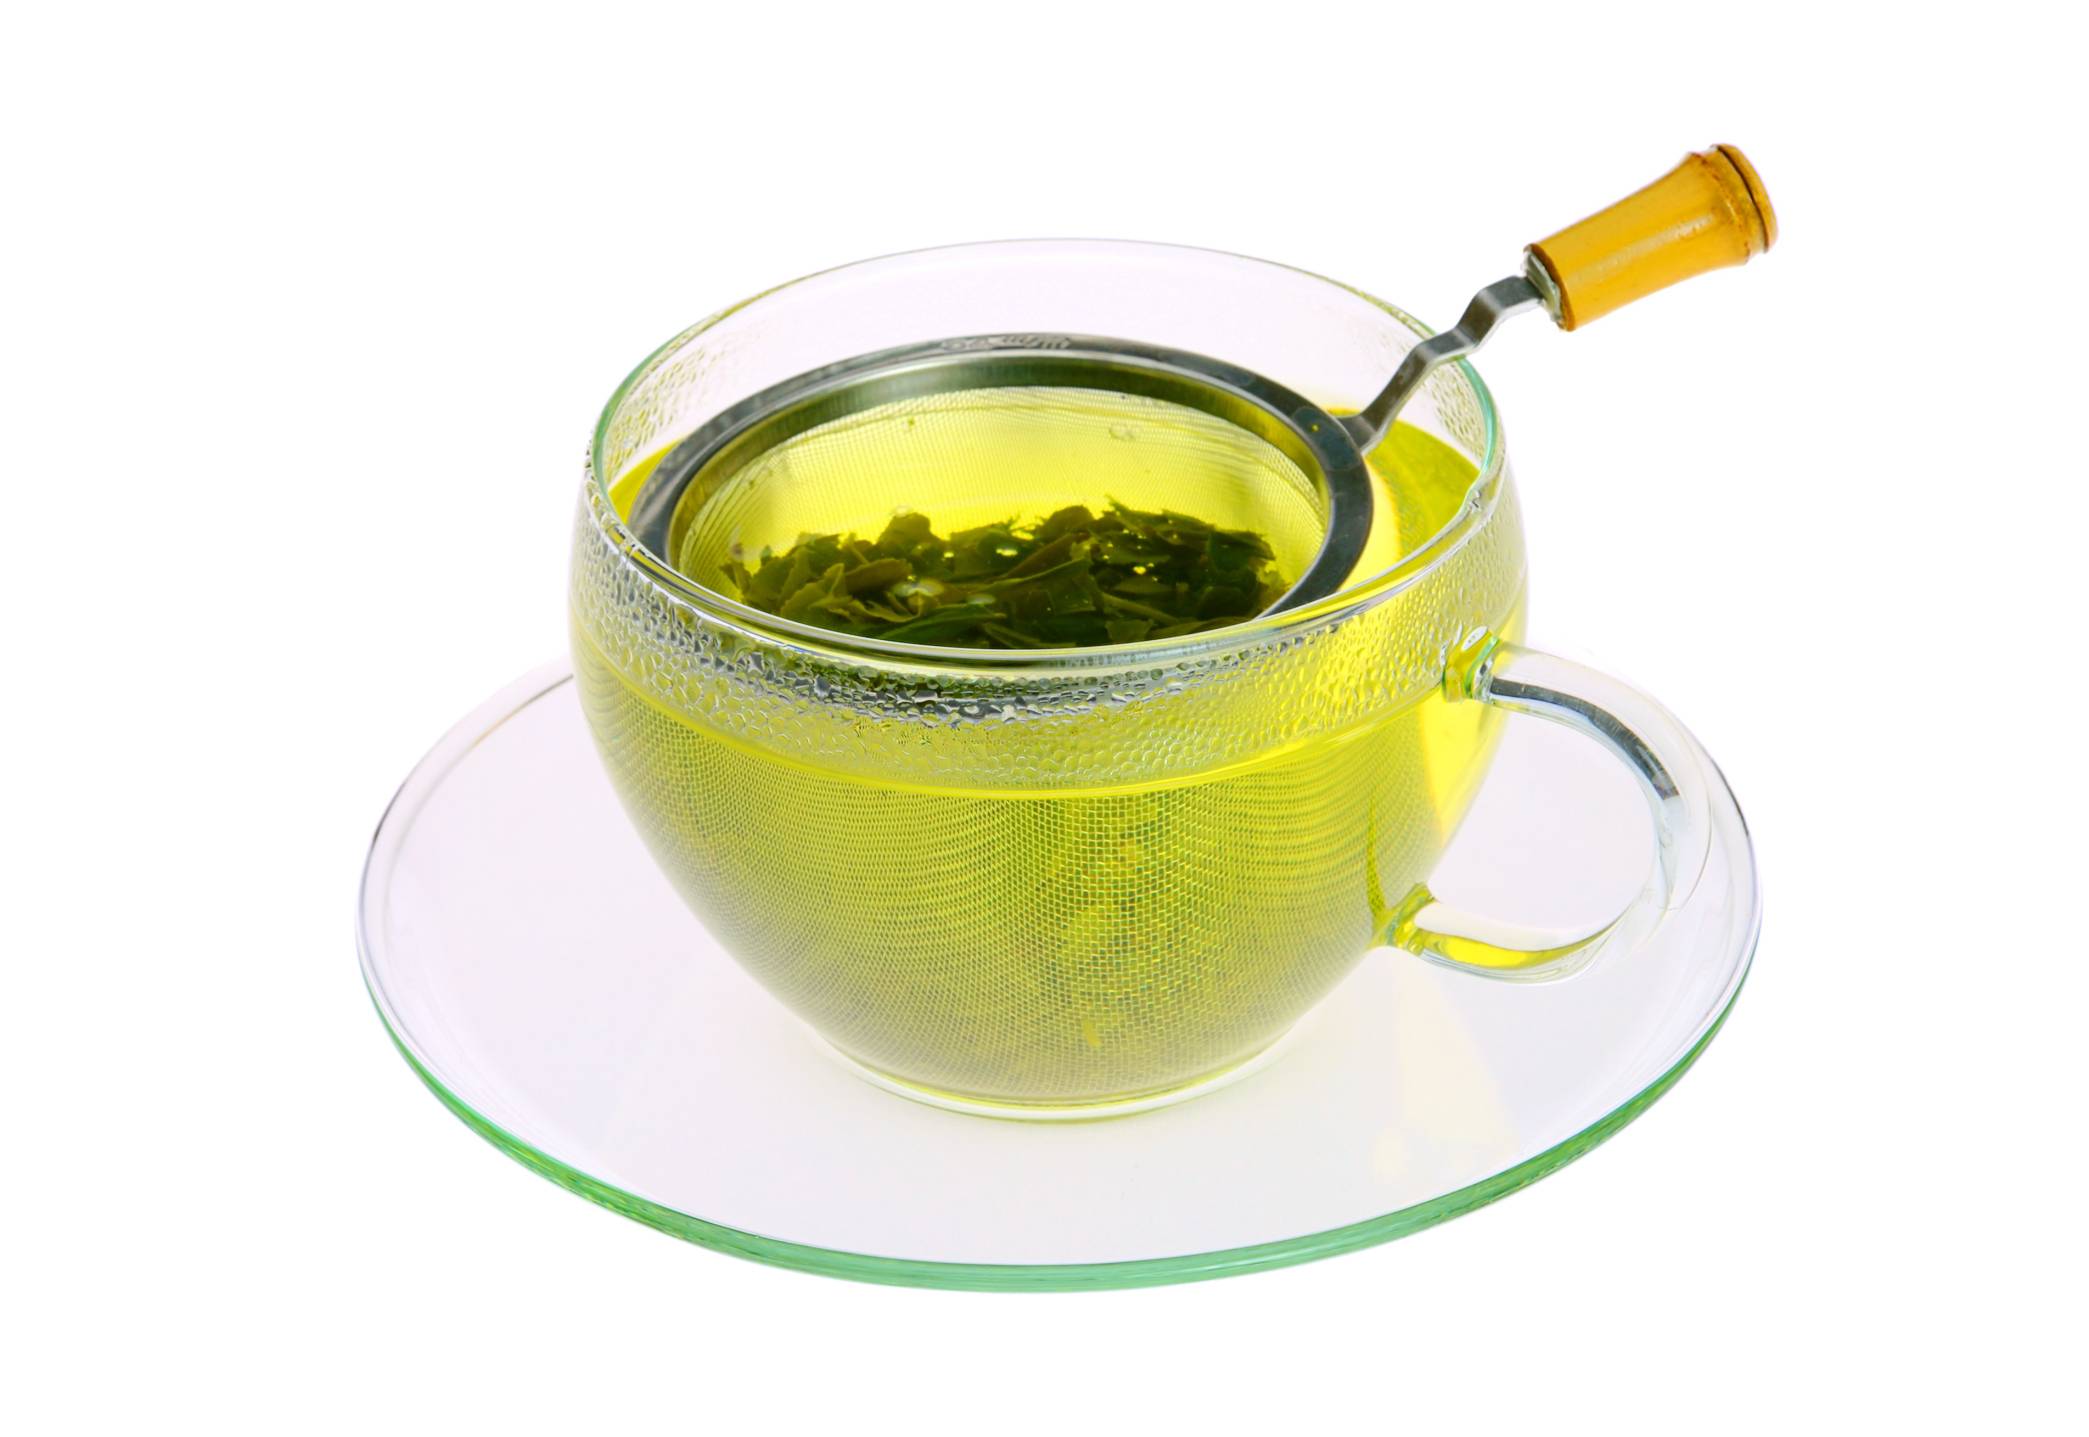 Зеленый чай для волос - мамин советник